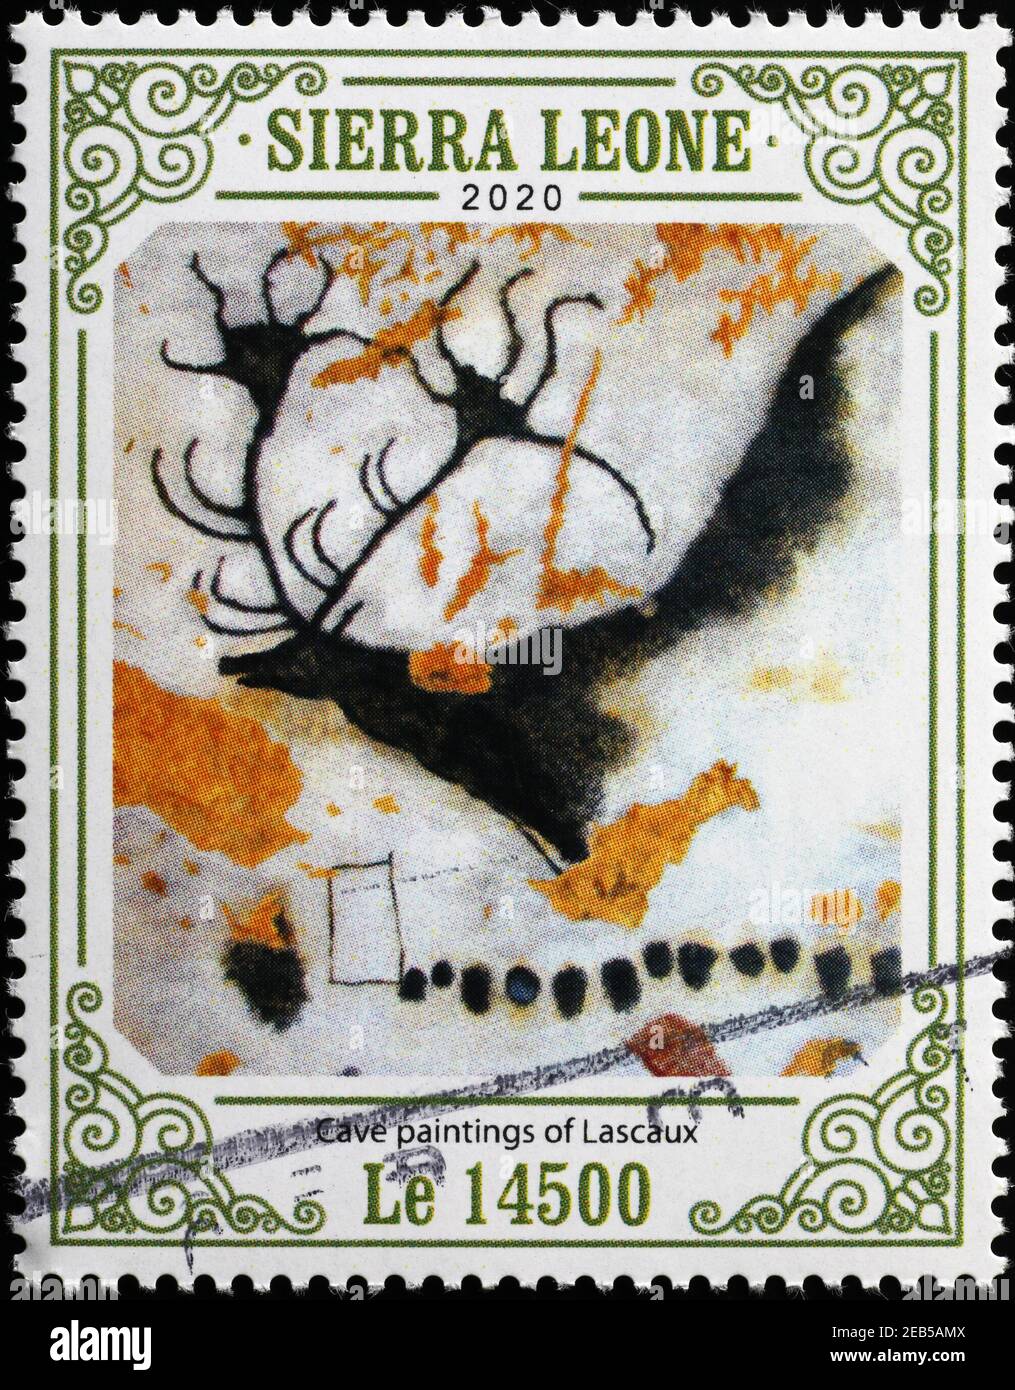 Cerf dans des peintures rupestres de Lascaux sur timbre-poste Banque D'Images